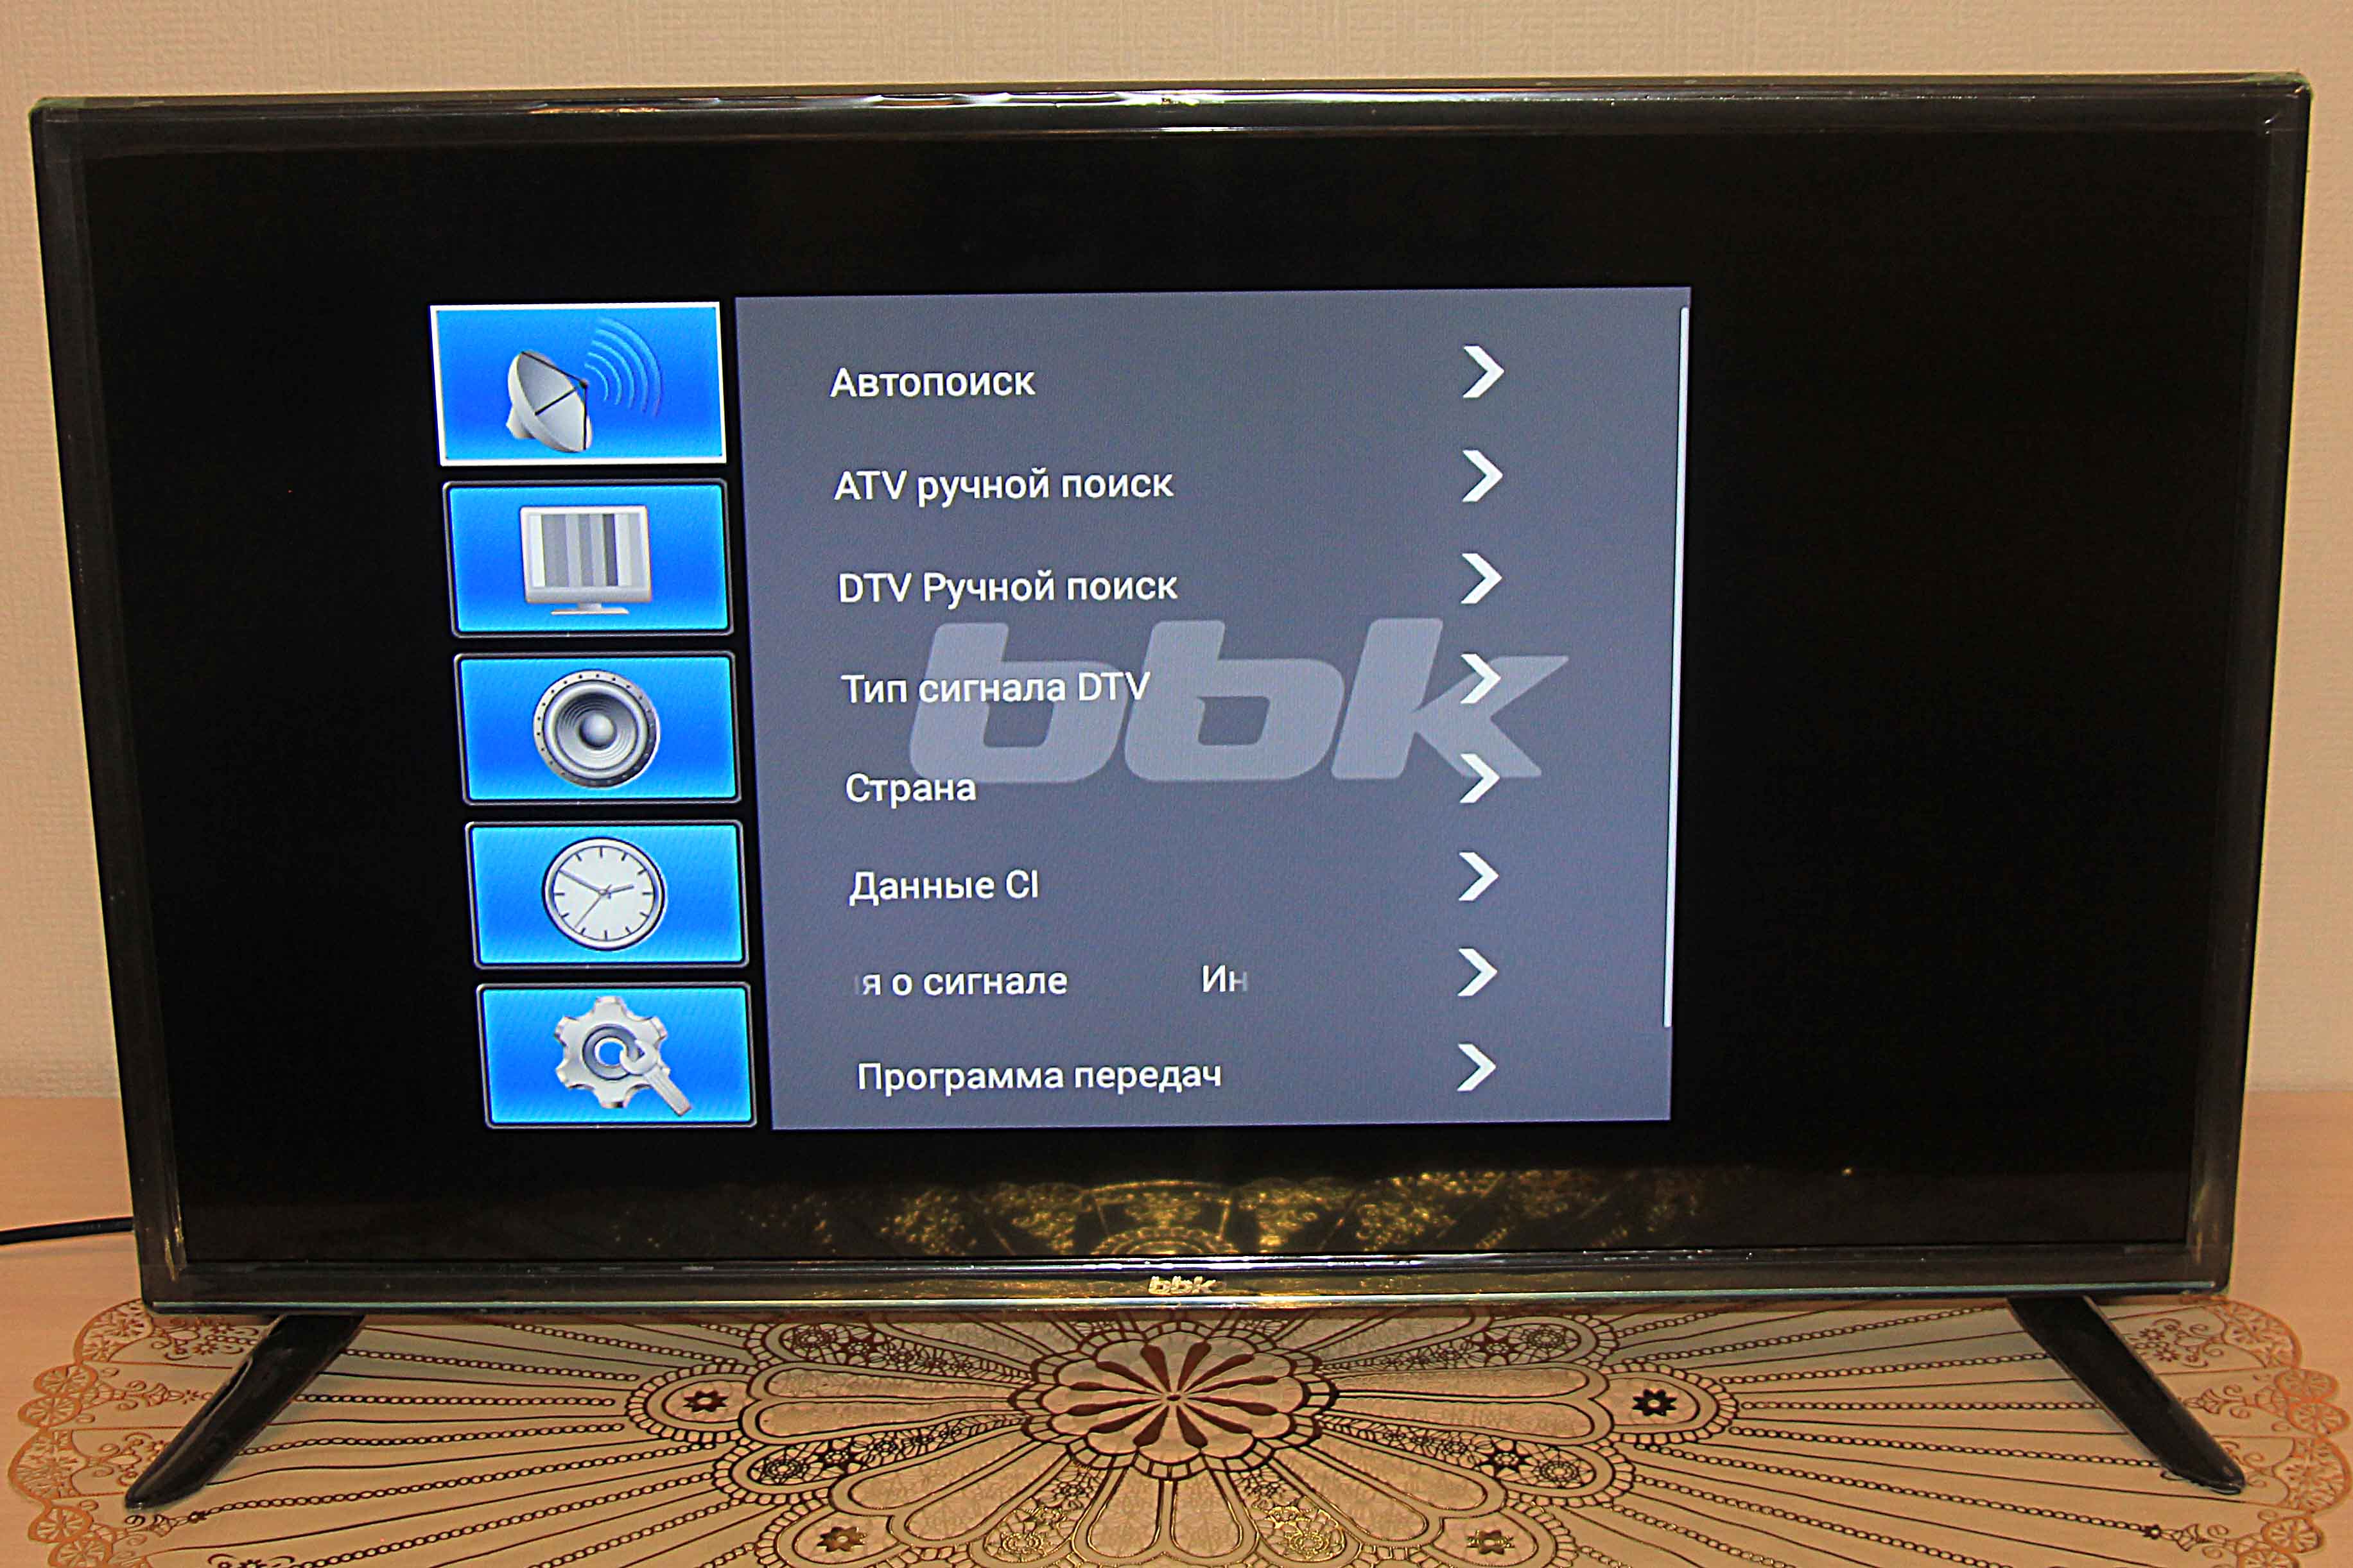 Телевизор bbk андроид